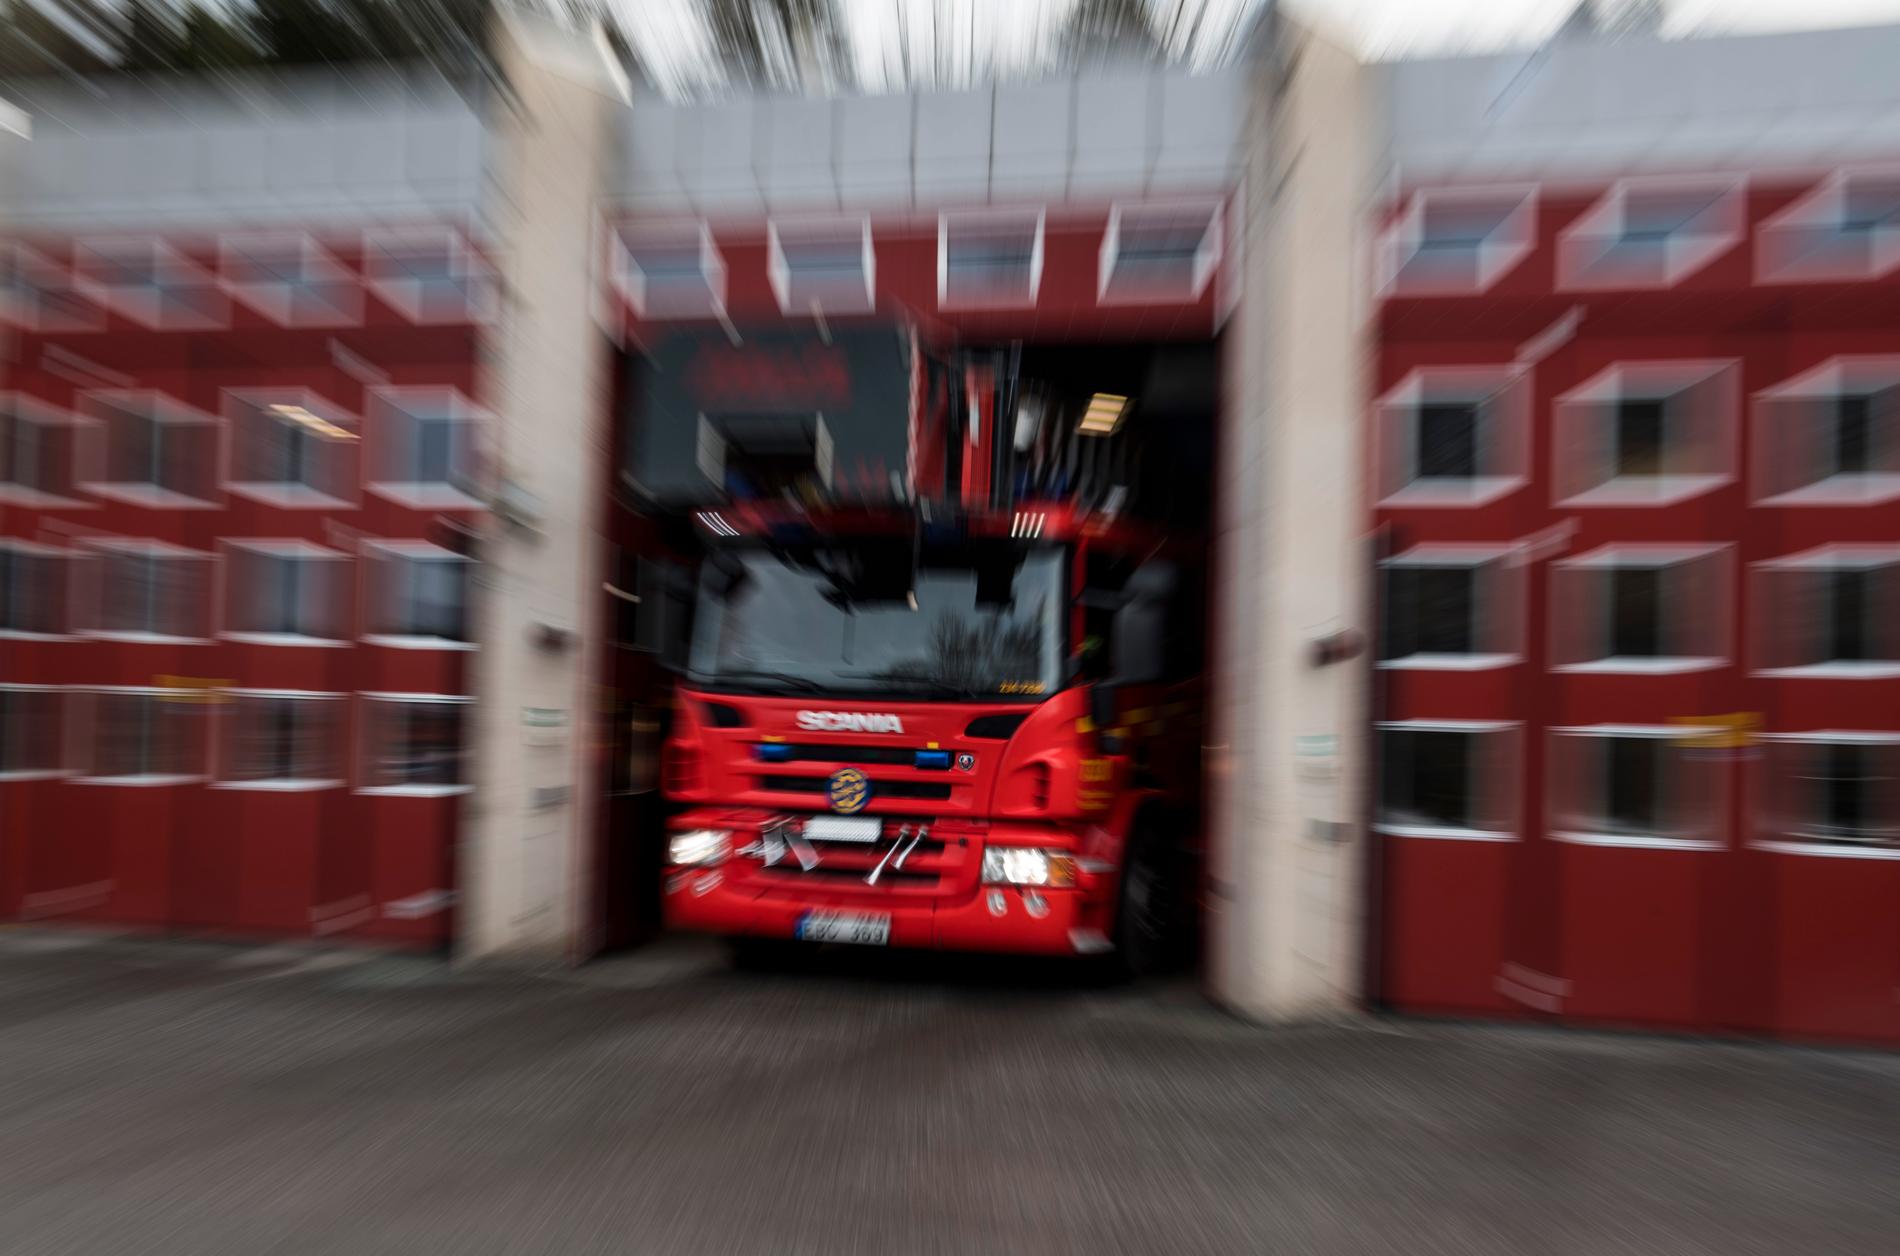 Räddningstjänsten fick rycka ut till en adress i Tynnered i Göteborg till en brand. En person omkom i samband med branden. Arkivbild.